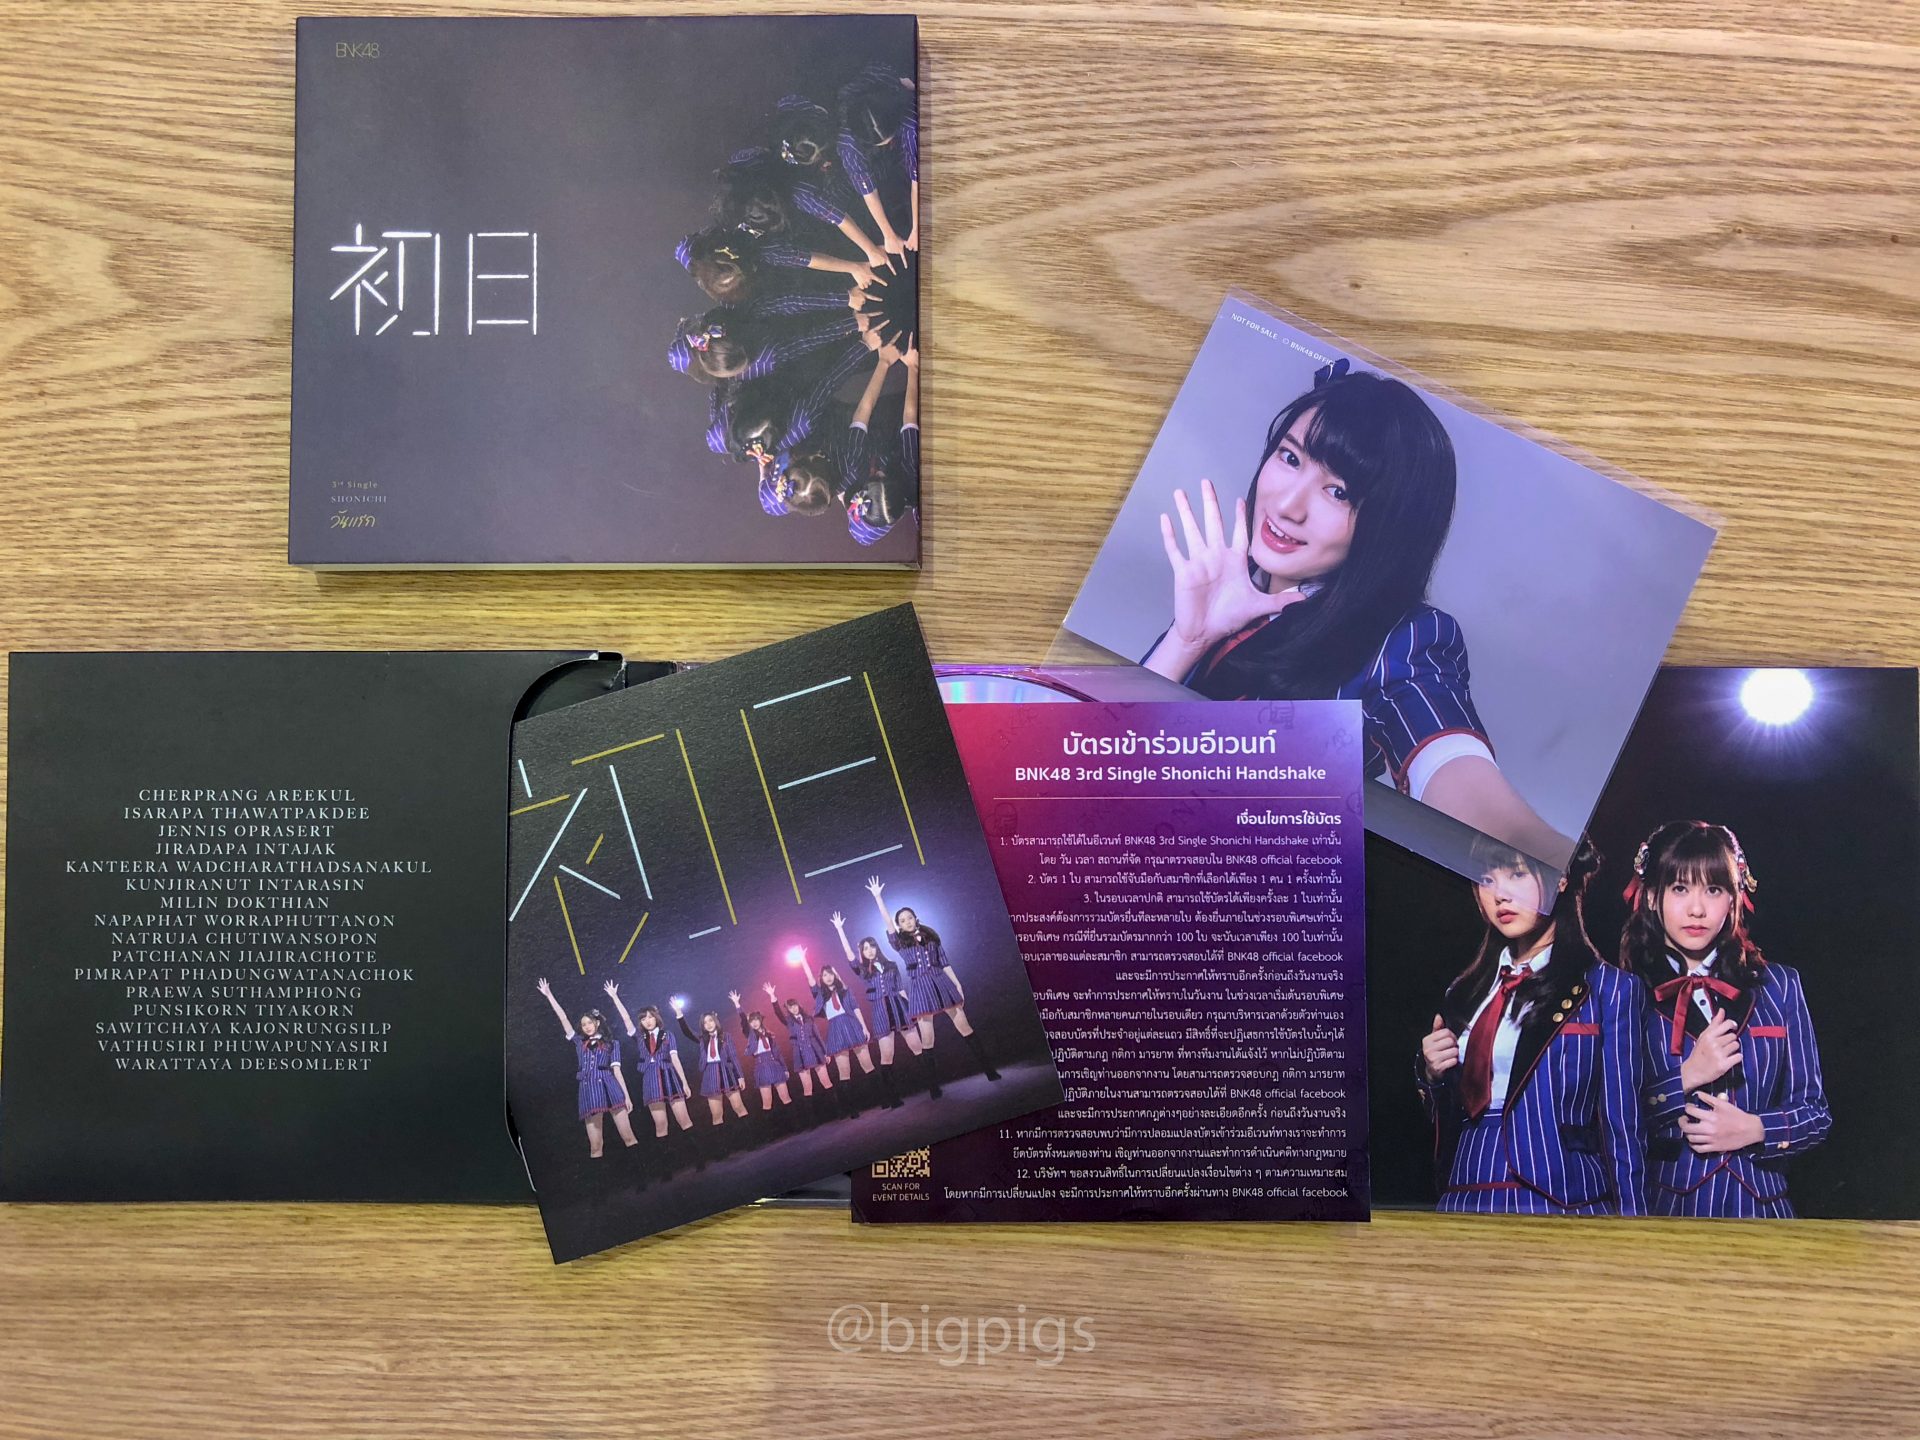 แกะกล่อง CD Shonichi วันแรก ซิงเกิลลำดับที่ 3 ของ BNK48